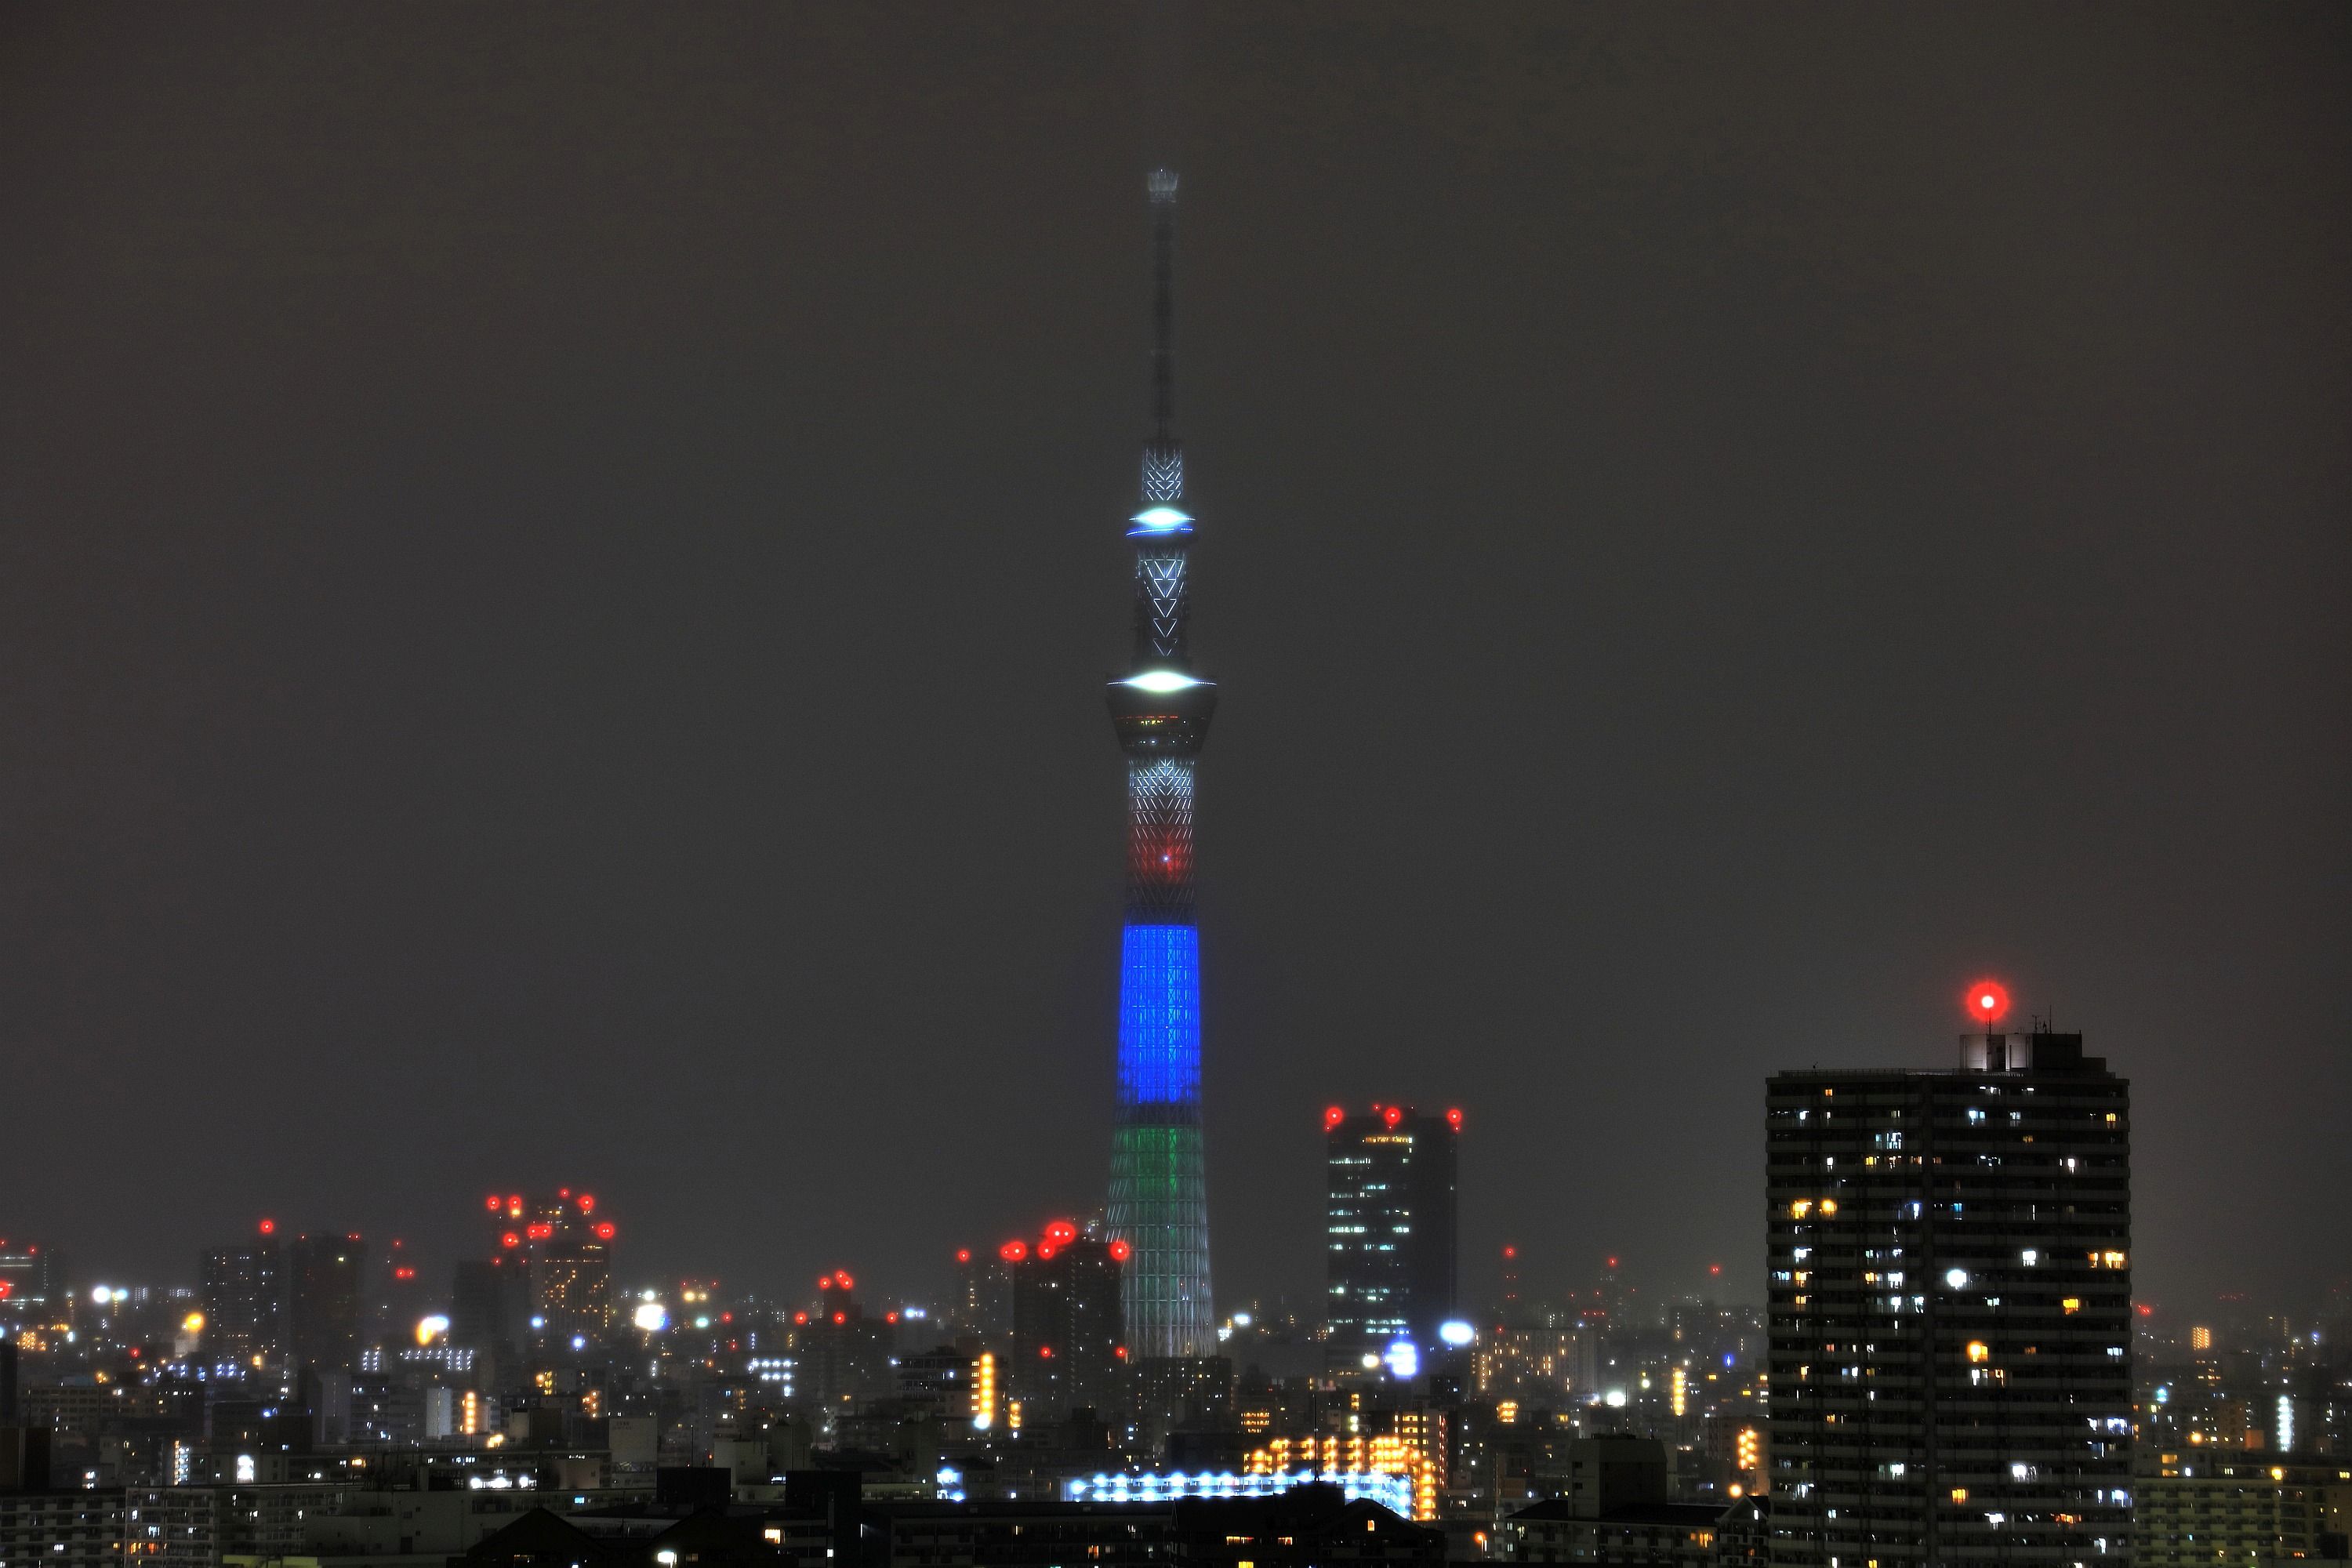 赤 青 緑 のアギトスカラーの東京スカイツリー夜景 18年3月9日 東京スカイツリー定点観測所